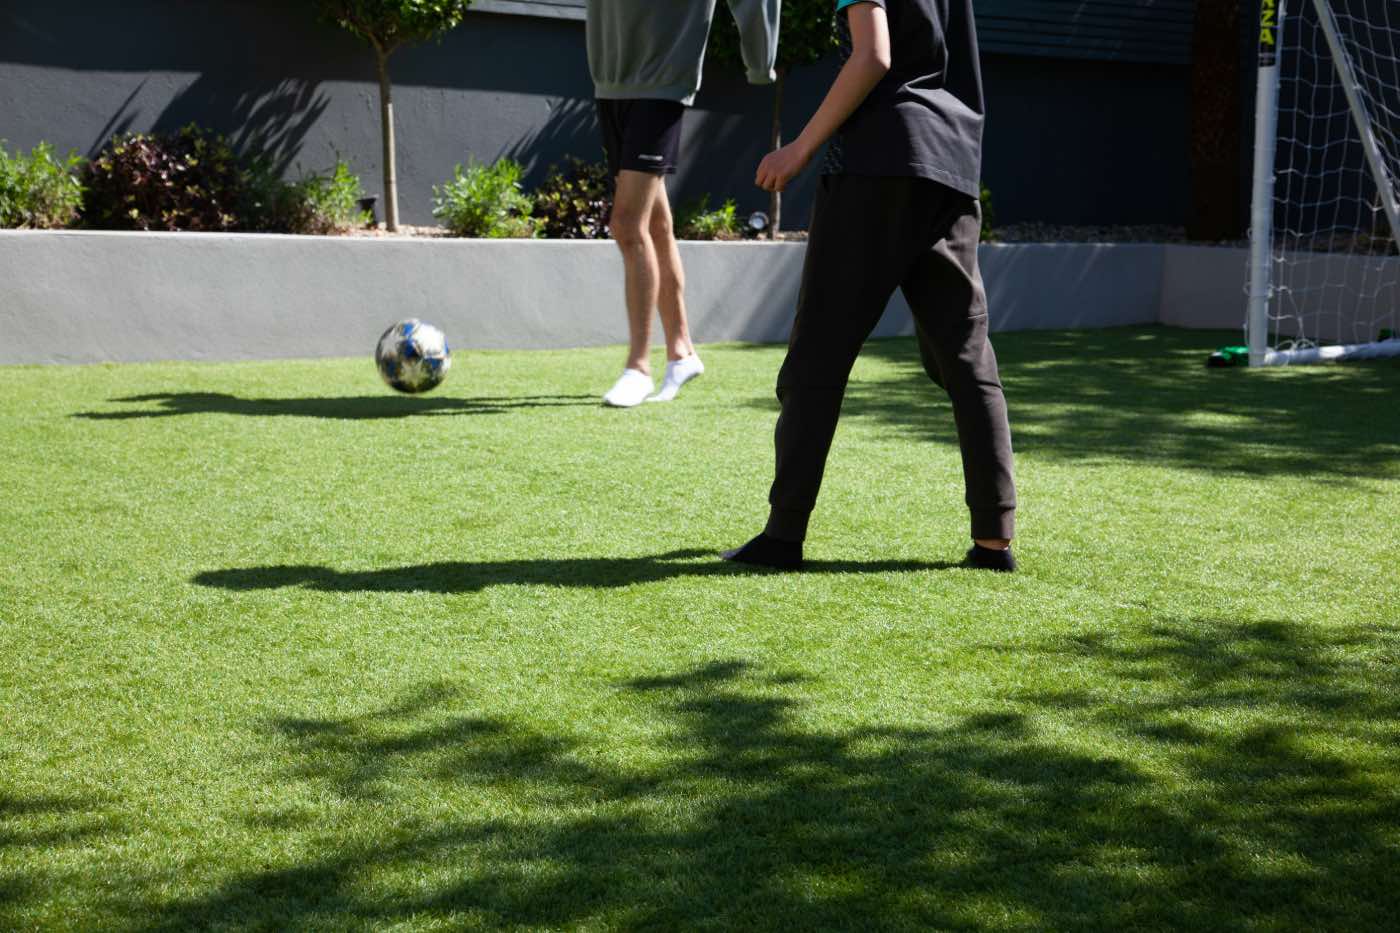 jardín con césped artificial para jugar al fútbol, niños jugando